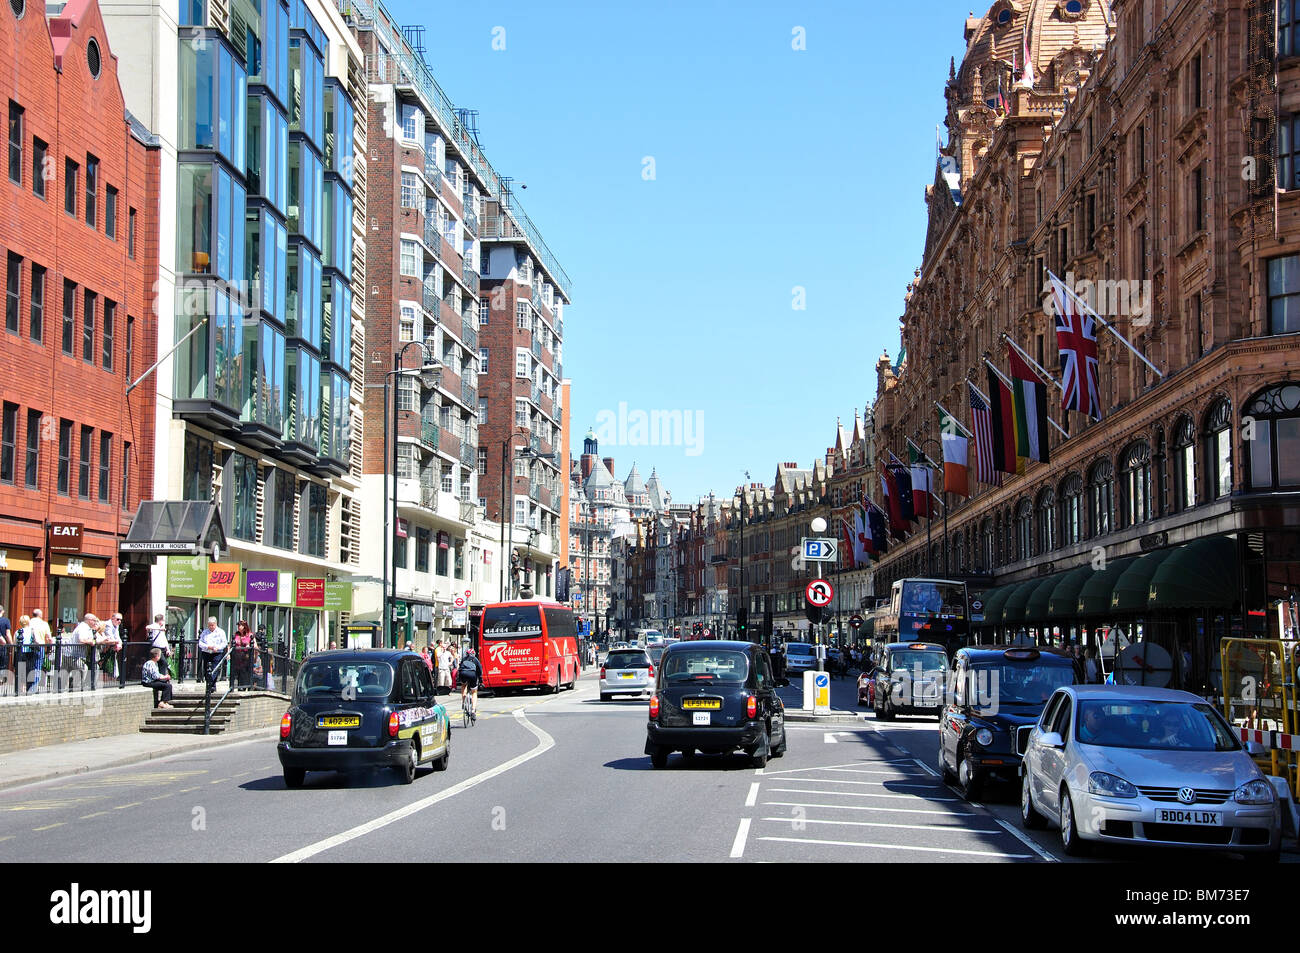 Brompton Road, Knightsbridge, le quartier royal de Kensington et Chelsea, Greater London, Angleterre, Royaume-Uni Banque D'Images